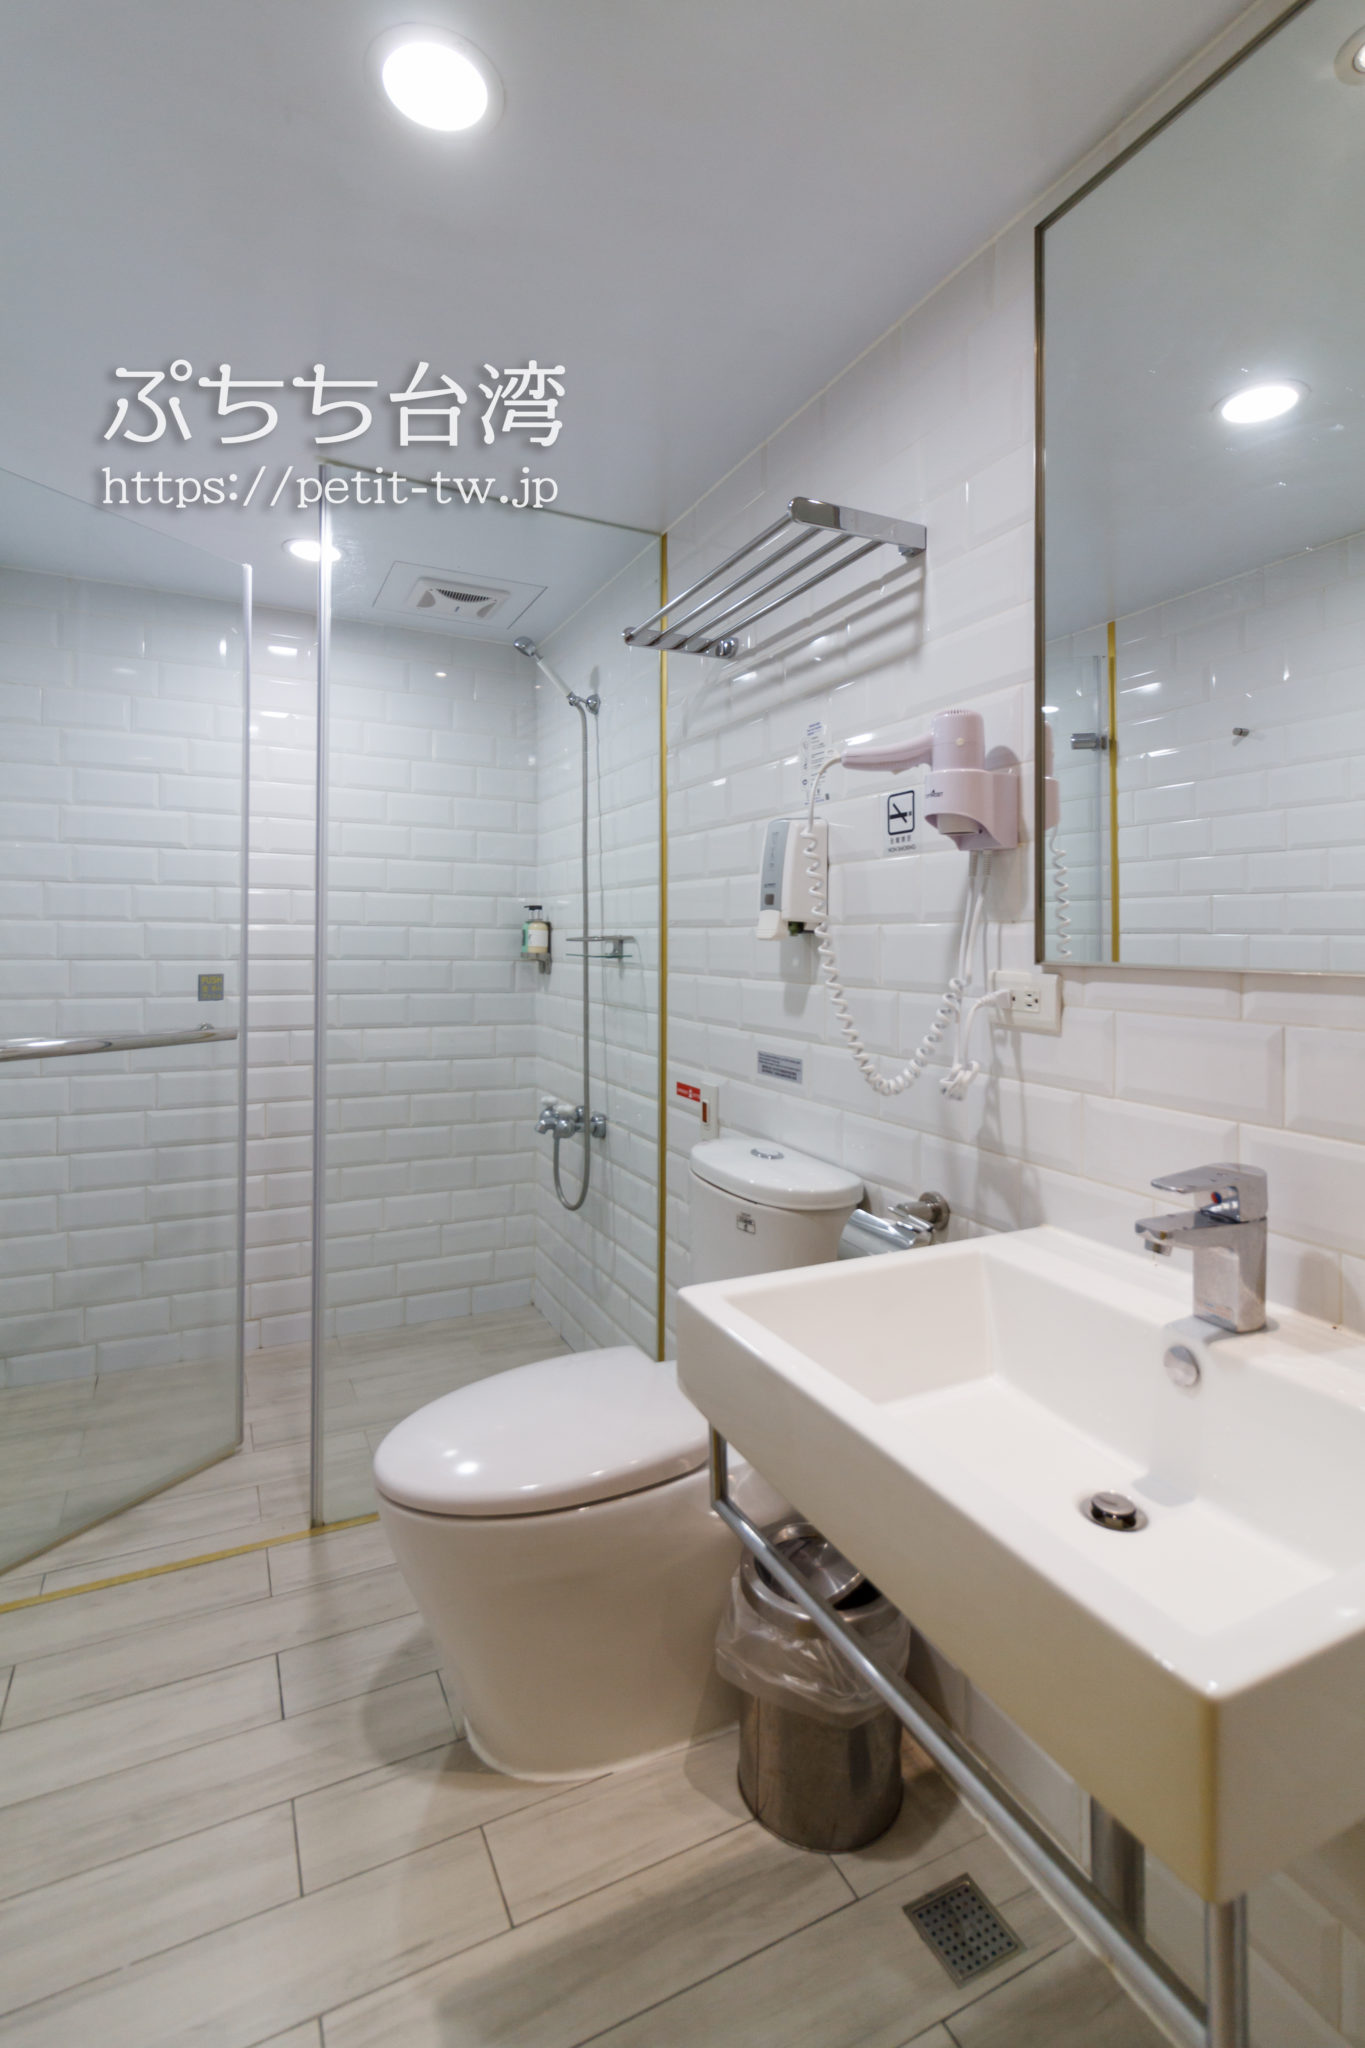 ブティシティカプセルイン台北の洗面室・トイレ